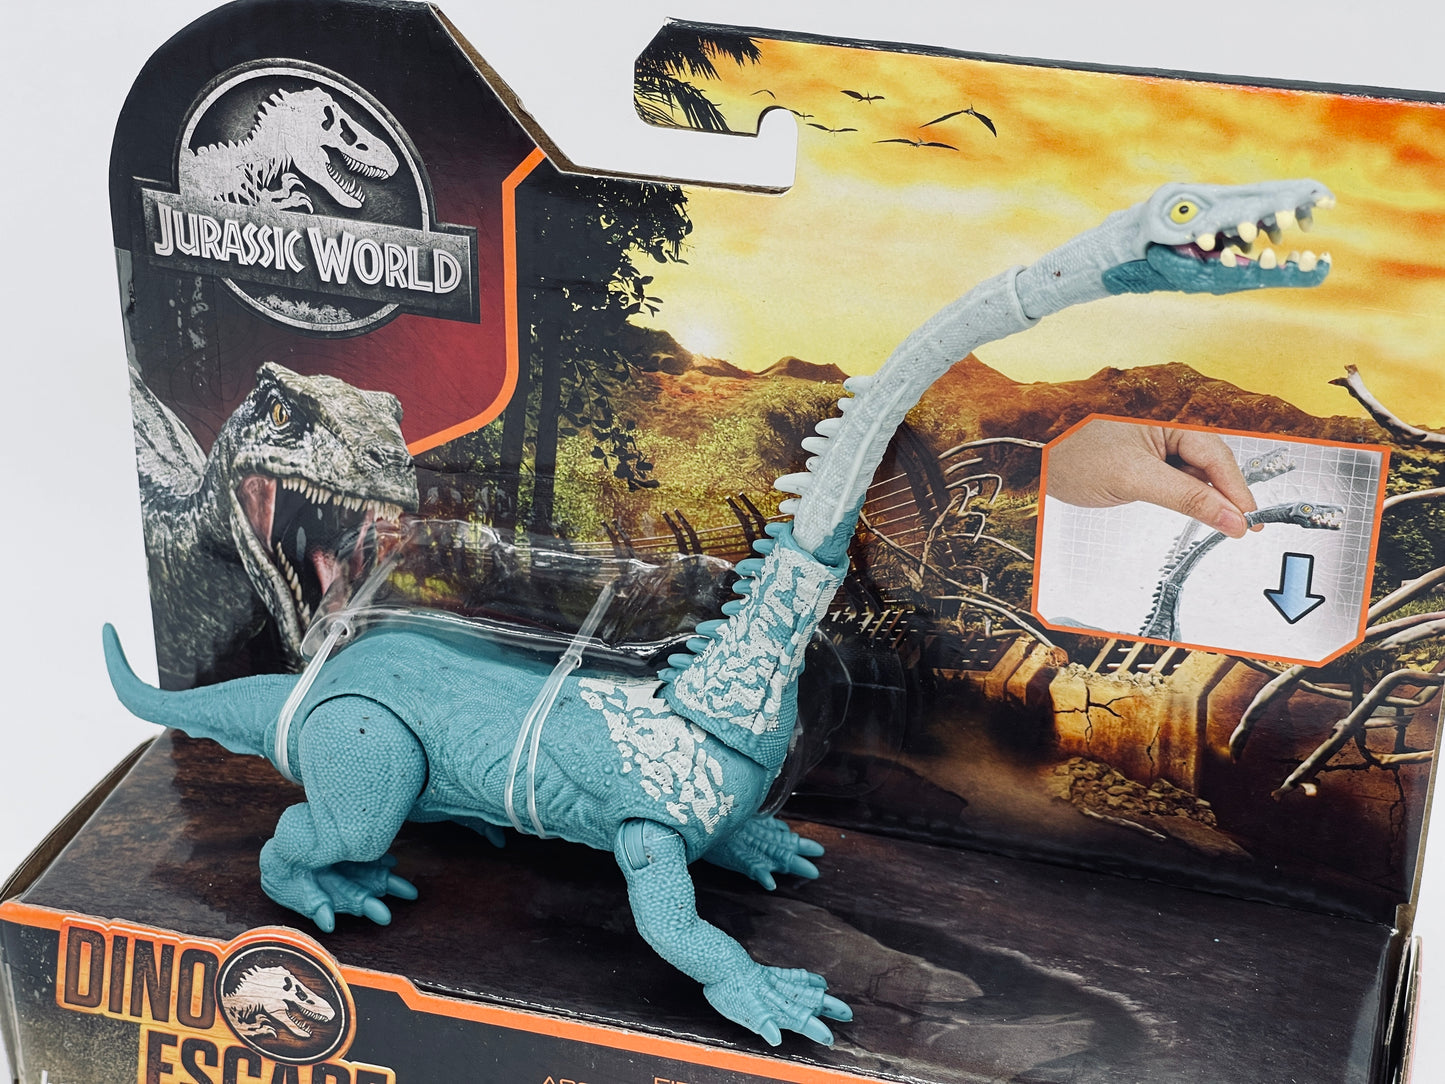 Jurassic World Camp Cretaceous - Tanystropheus - Dino Escape Fierce Force Netflix